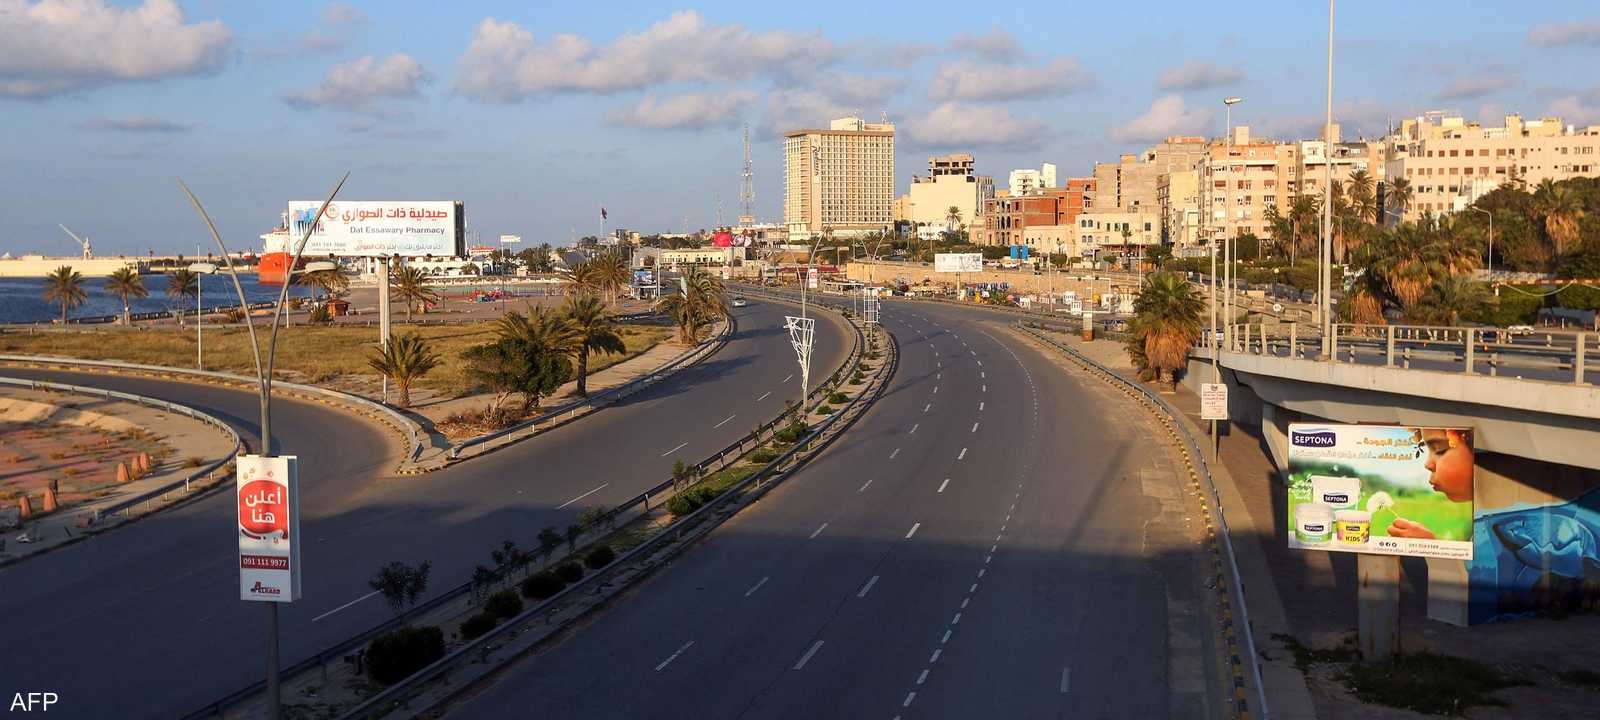 جانب من العاصمة الليبية طرابلس